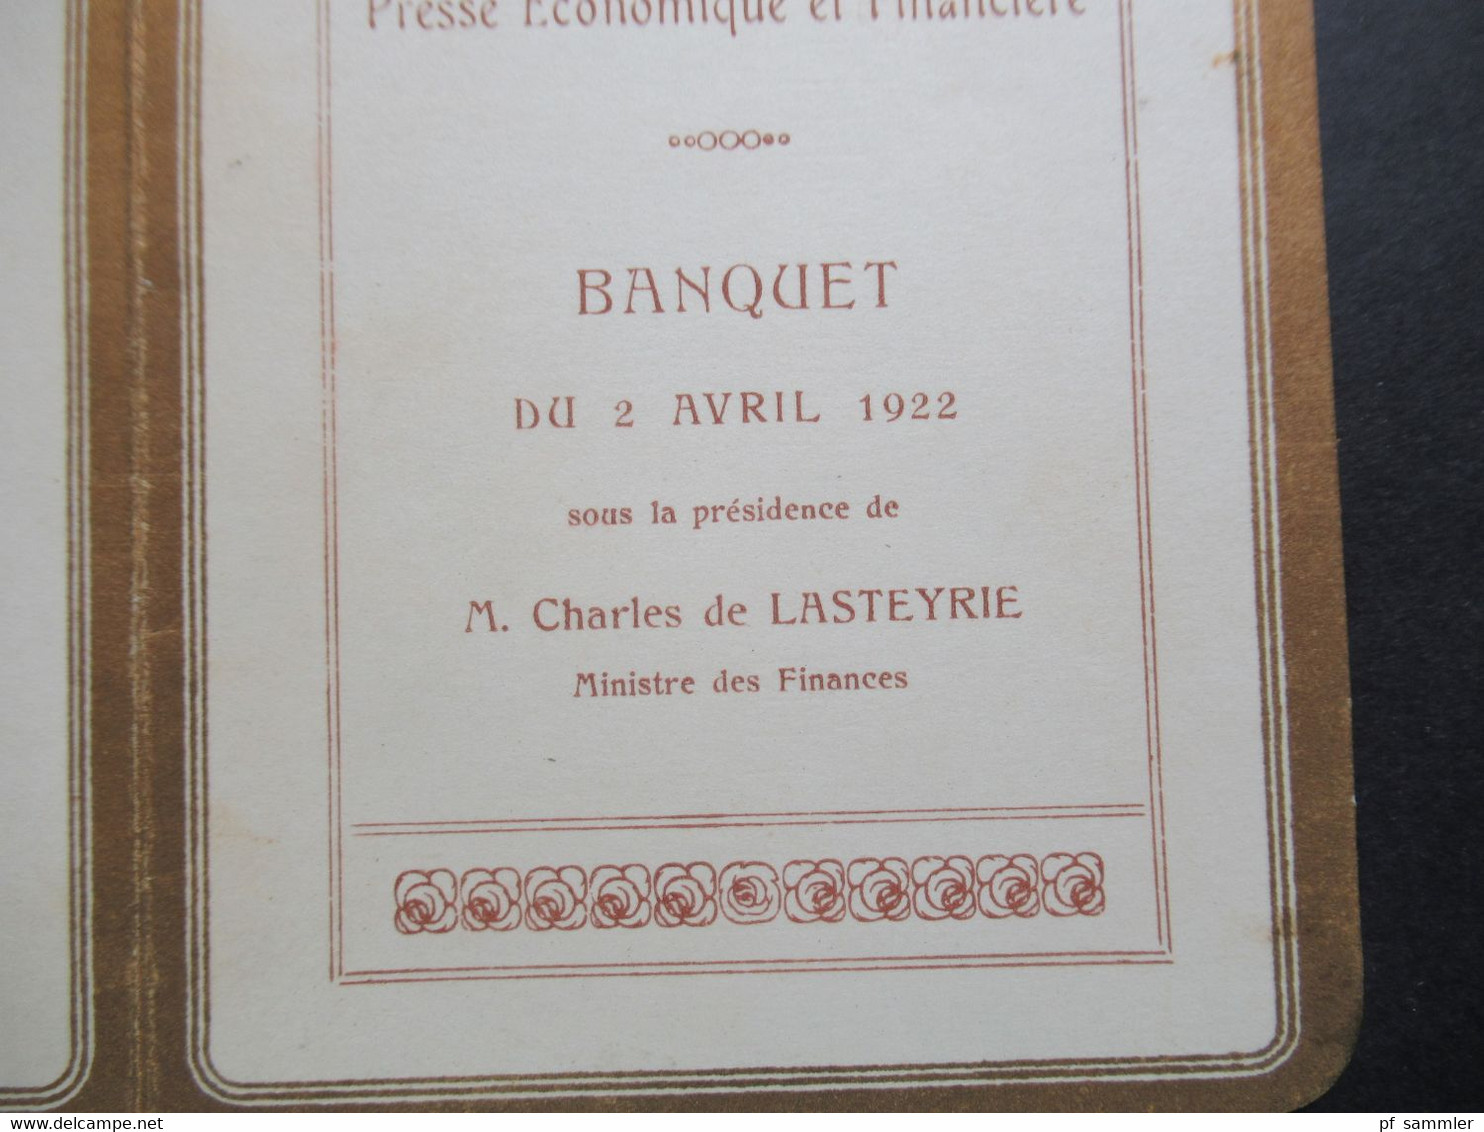 1922 Association De La Presse Economique Et Financiere Zum Banquet Sous La Presidence De M. Charles De Lasteyrie - Menus